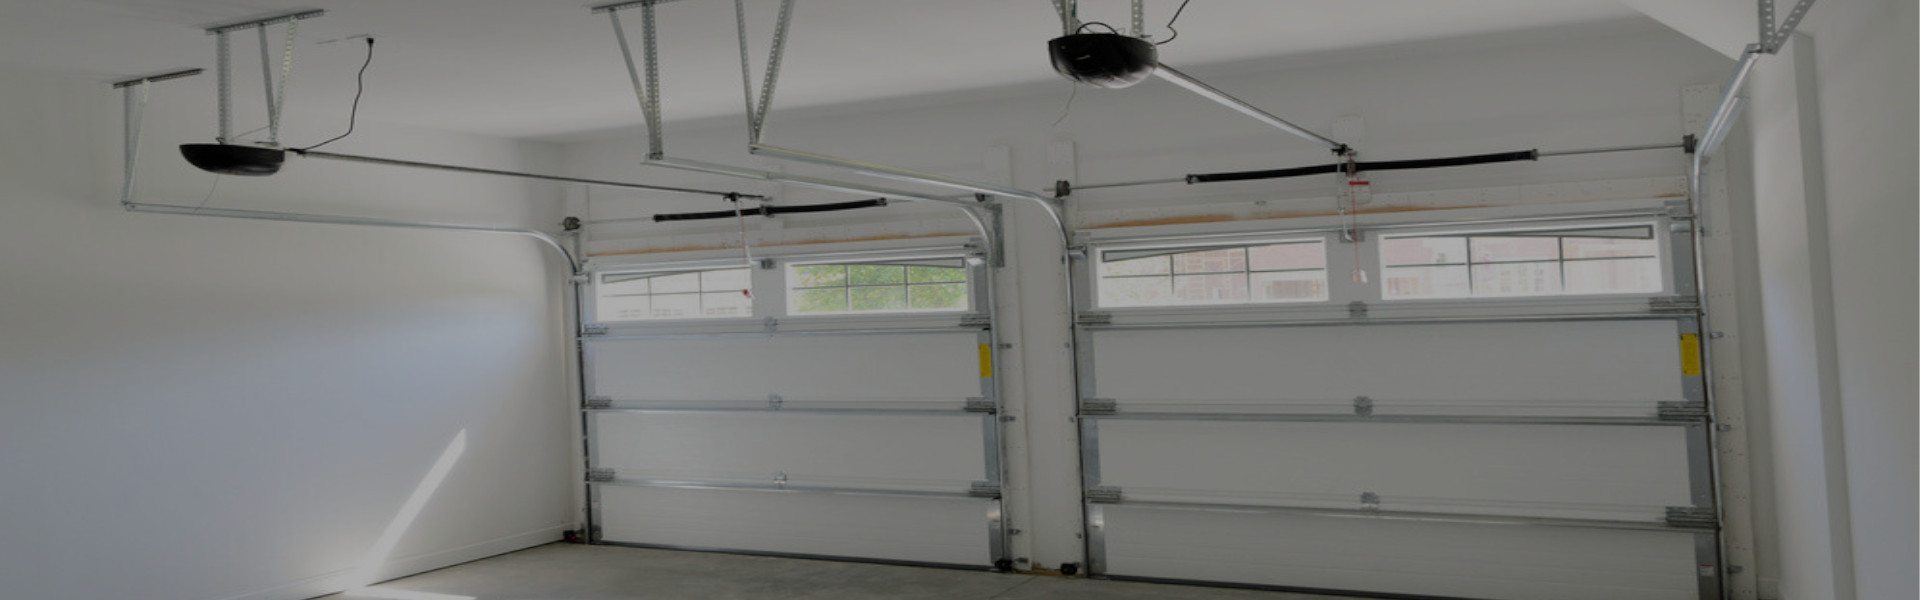 Slider Garage Door Repair, Glaziers in Dartford, Crayford, DA1